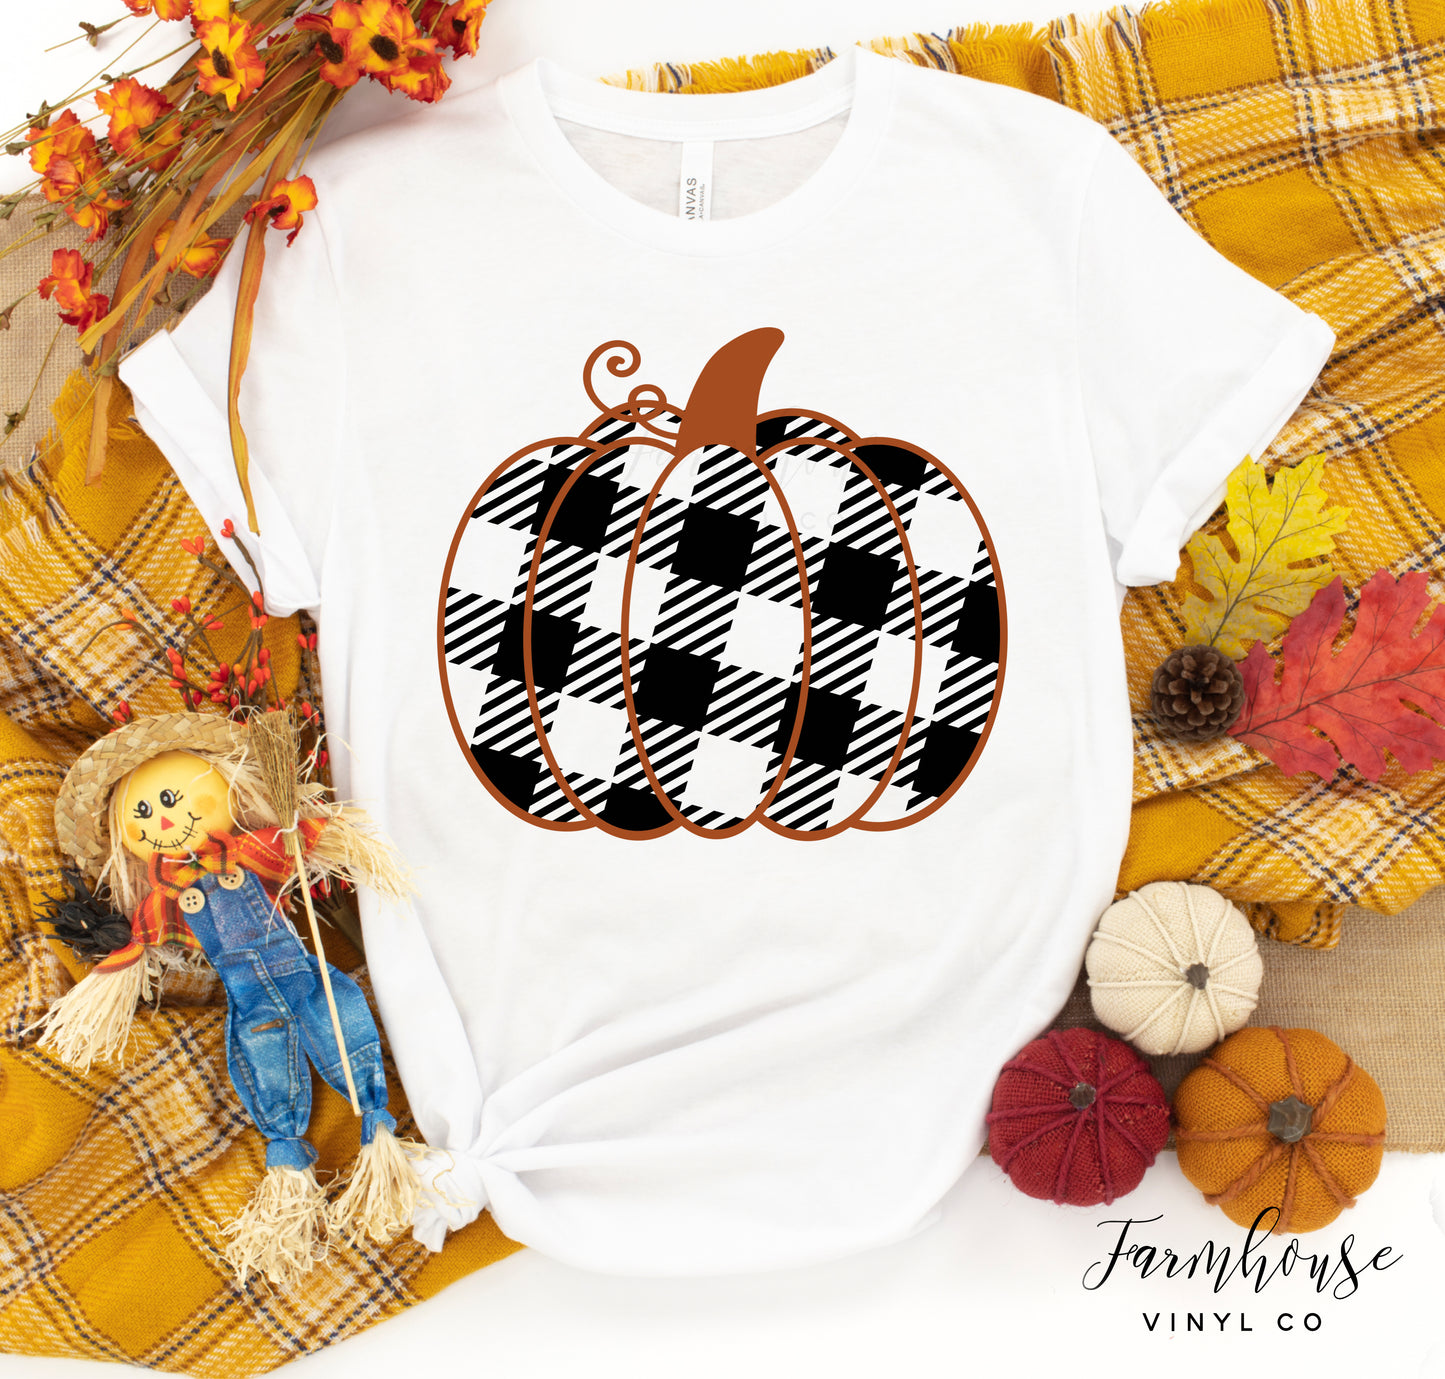 Plaid Pumpkin Shirt - Farmhouse Vinyl Co